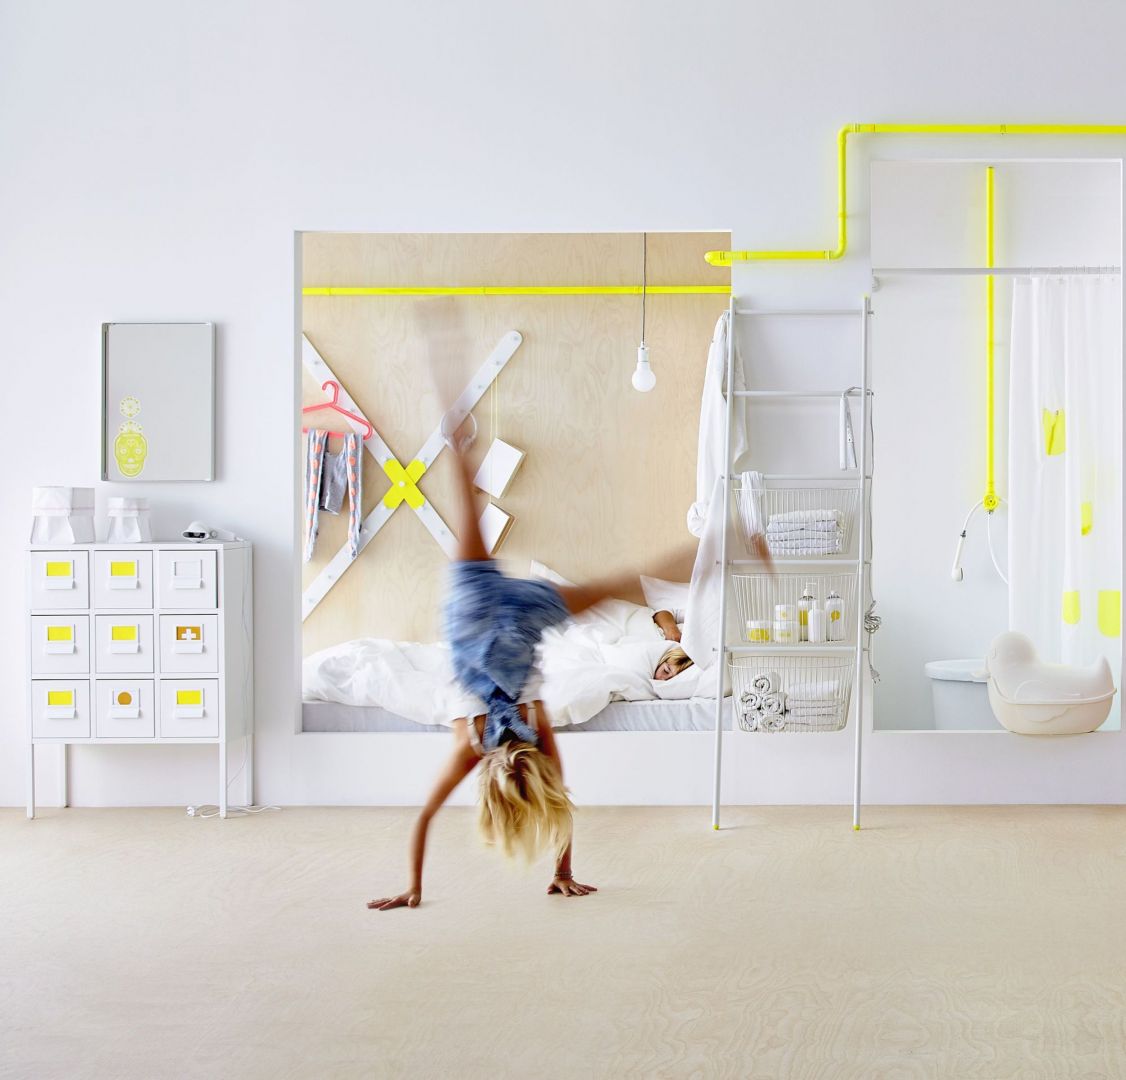 Na zdjęciu ergonomiczna kolekcja Sprutt zaprojektowana tak, by szybko odnaleźć potrzebną nam rzecz. Fot. IKEA